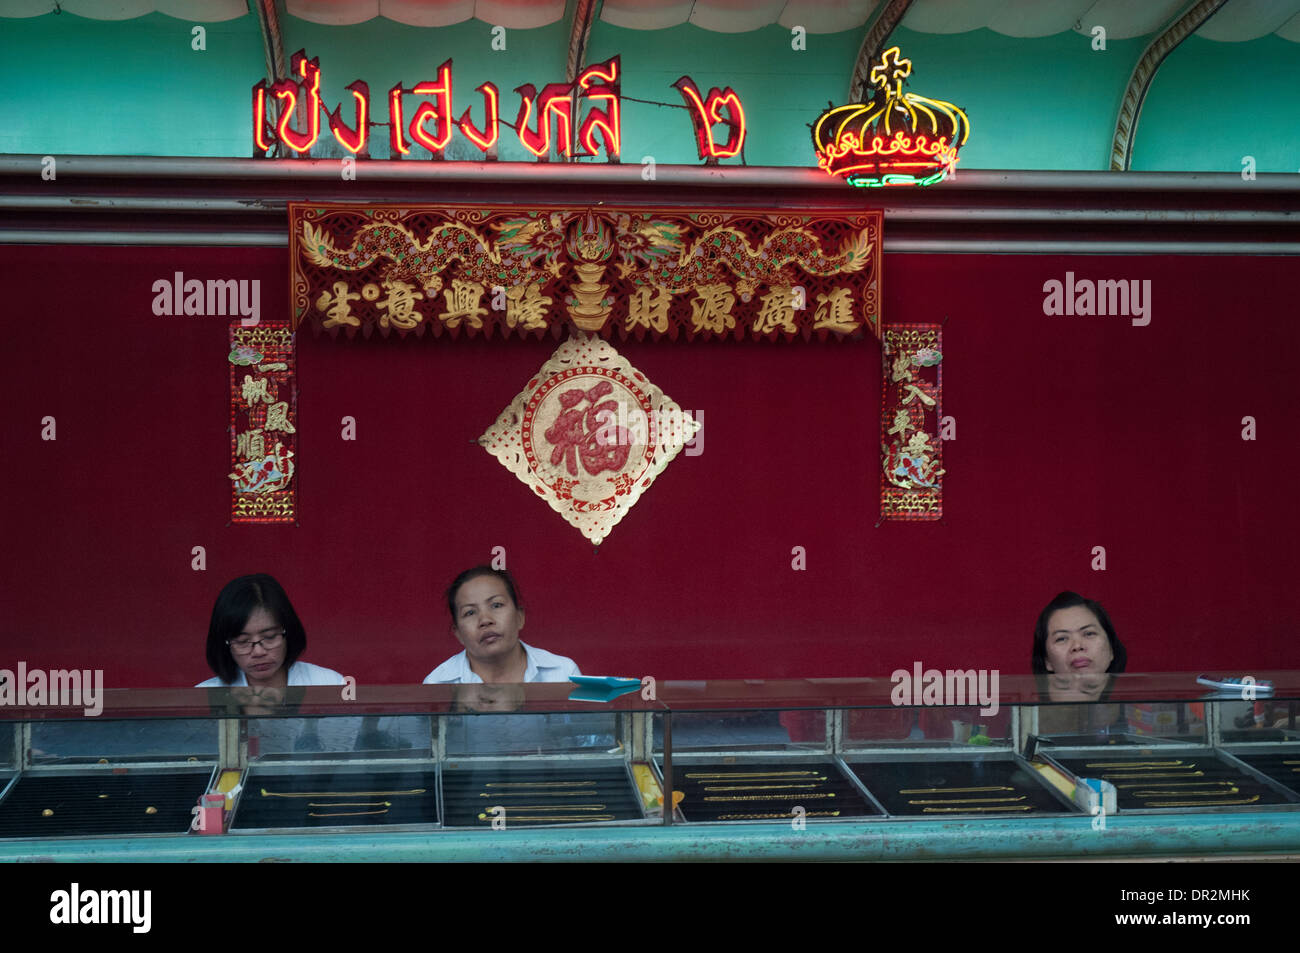 Le personnel du comptoir à un orfèvre store à Bangkok, comme Chinatown se prépare pour le Nouvel An Chinois, 2014, l'année du cheval Banque D'Images